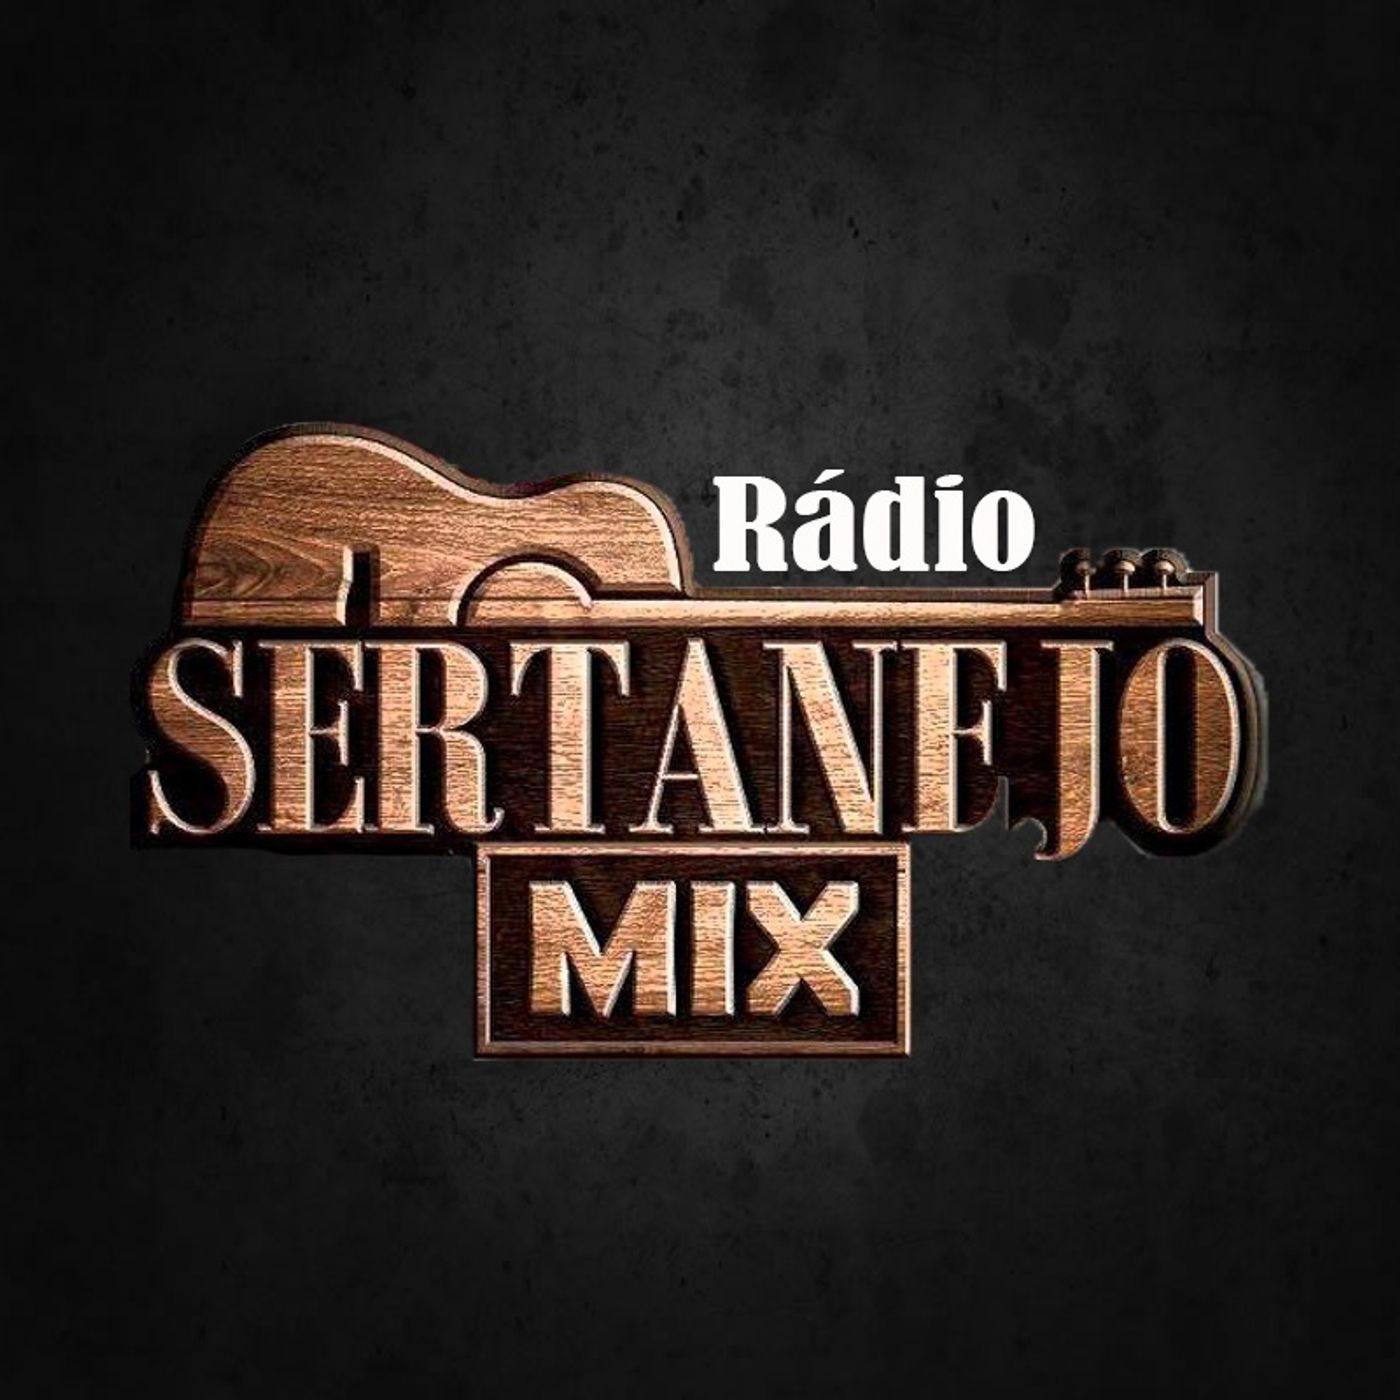 Rádio Sertanejo Mix's tracks